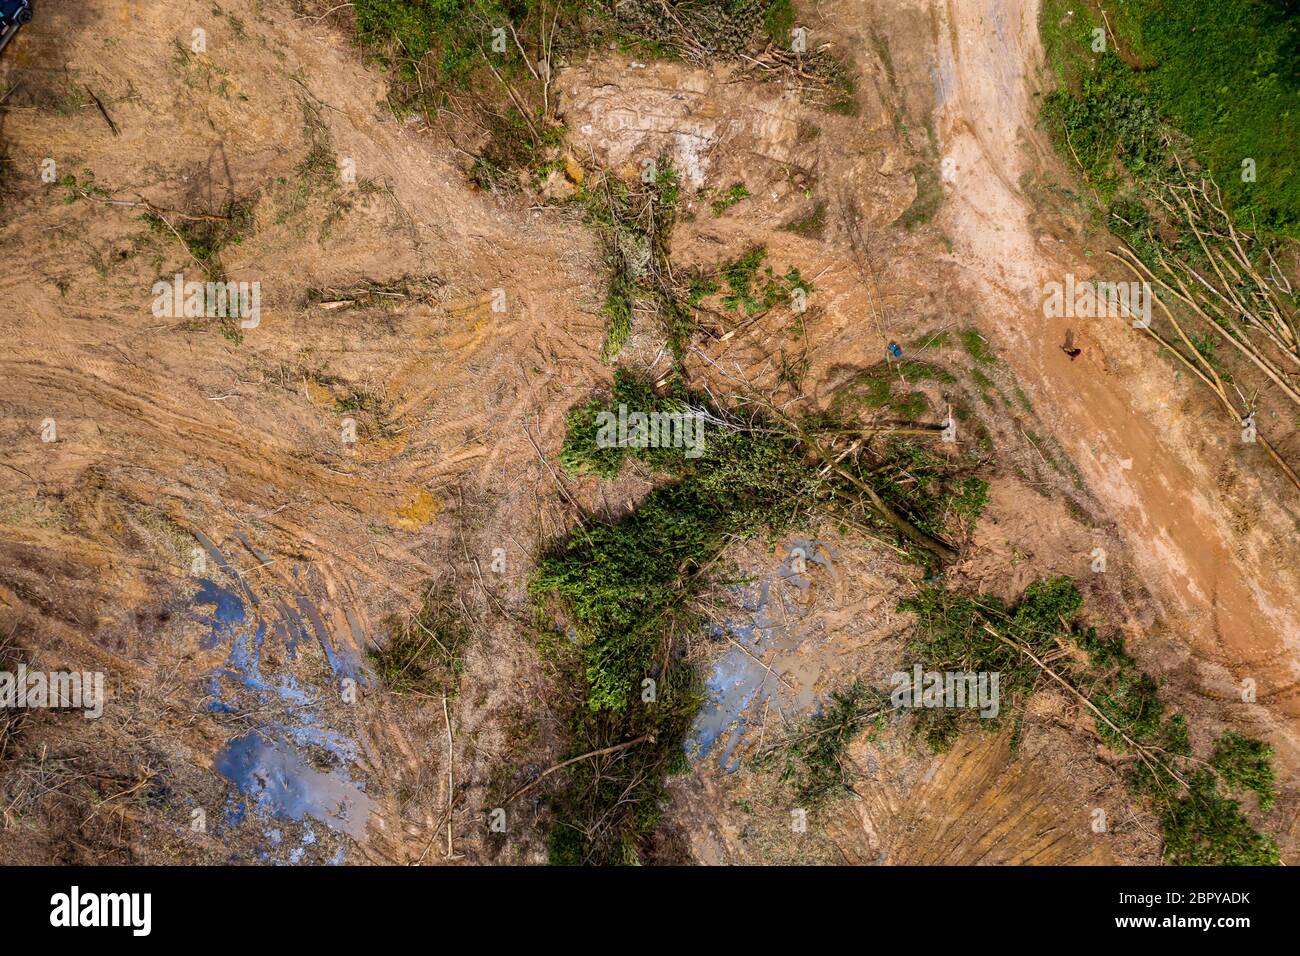 Vue aérienne de l'exploitation forestière et de la déforestation d'une forêt tropicale dans les zones rurales de la Thaïlande Banque D'Images